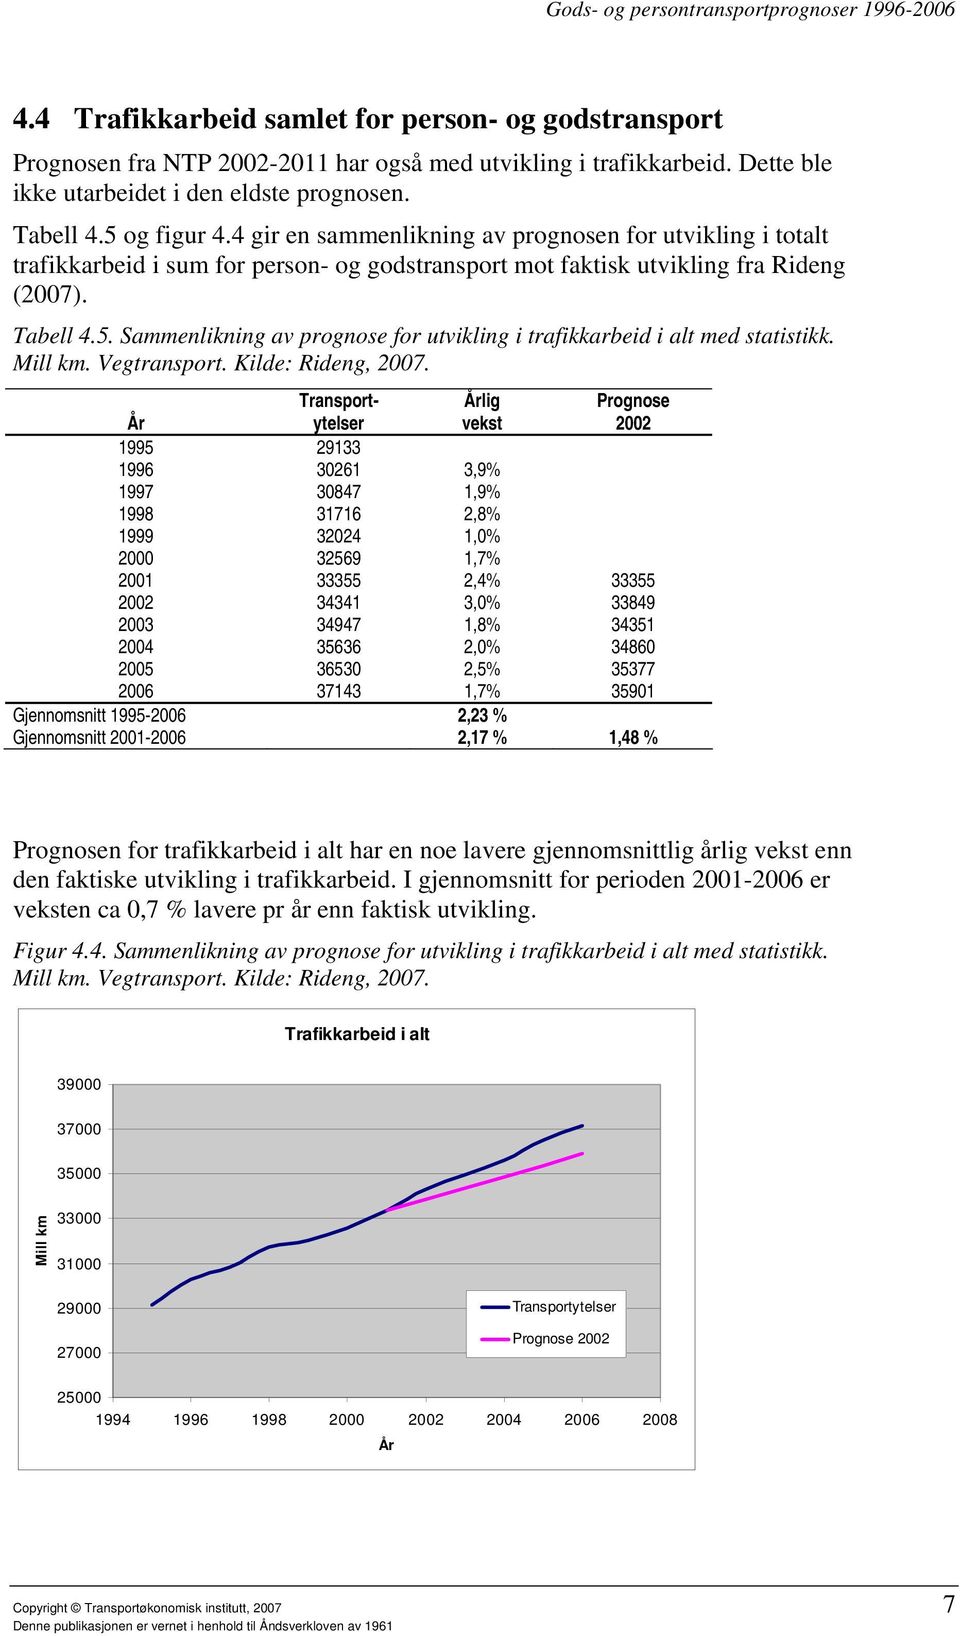 Sammenlikning av prognose for utvikling i trafikkarbeid i alt med statistikk. Mill km. Vegtransport. Kilde: Rideng, 2007.